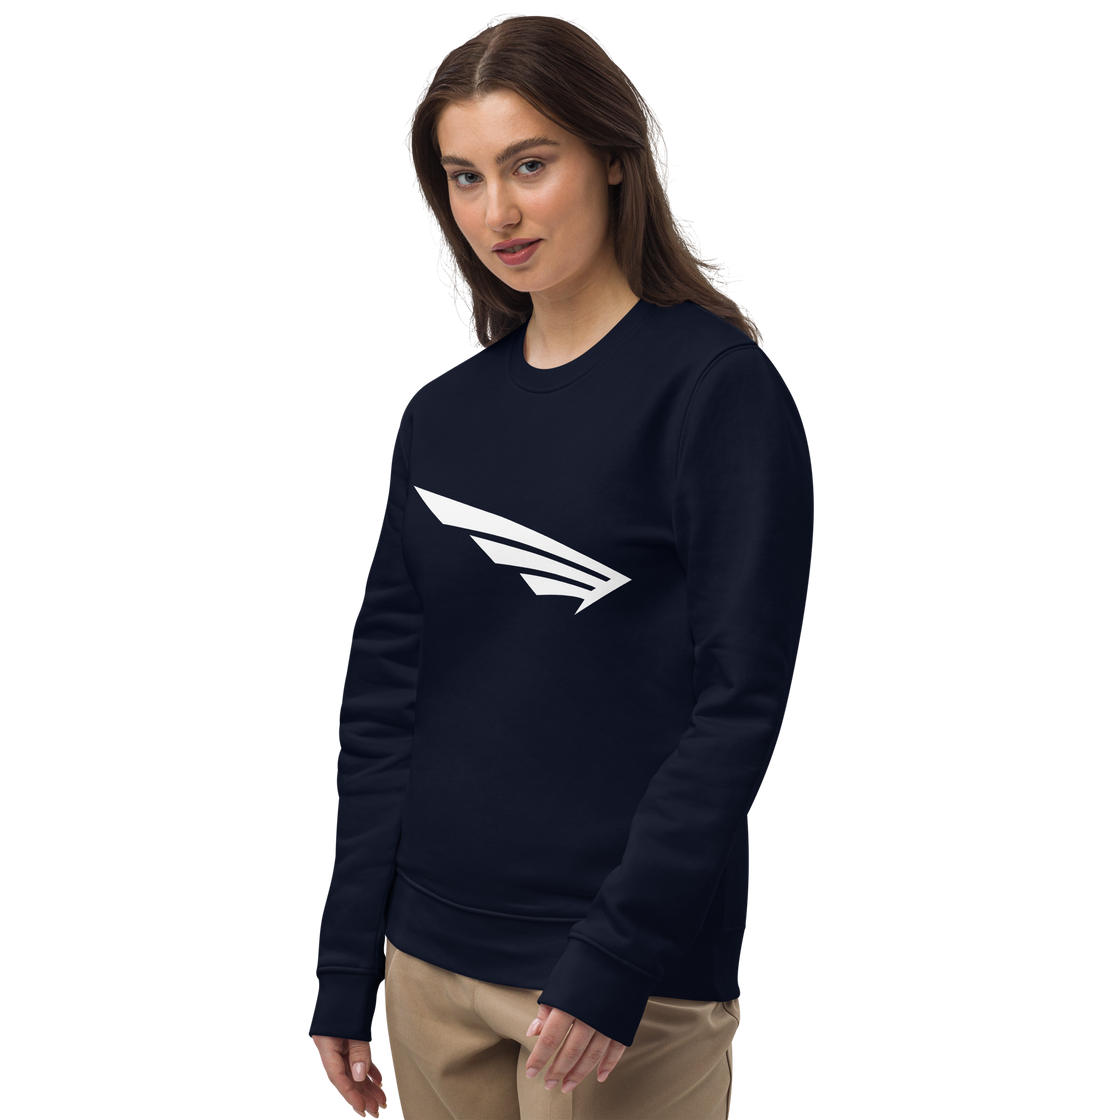 FLY³ eco sweatshirt